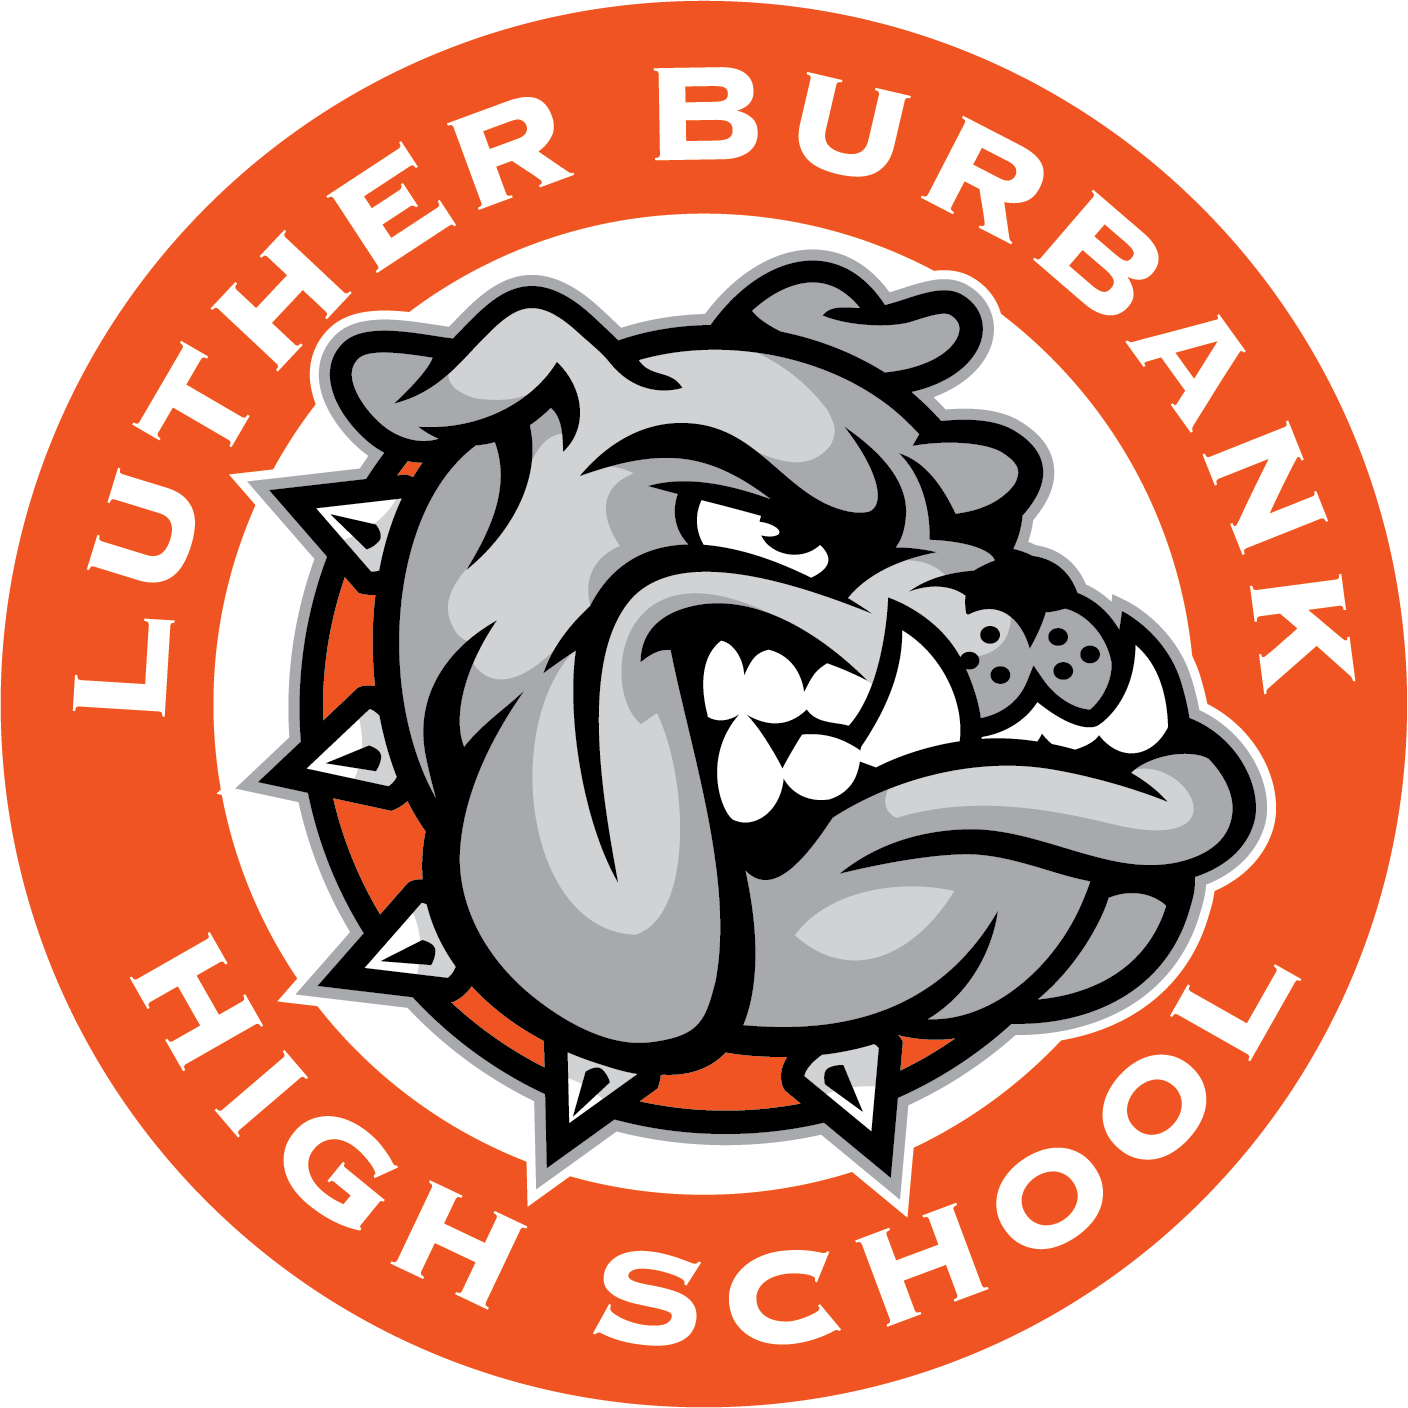 Burbank Logo